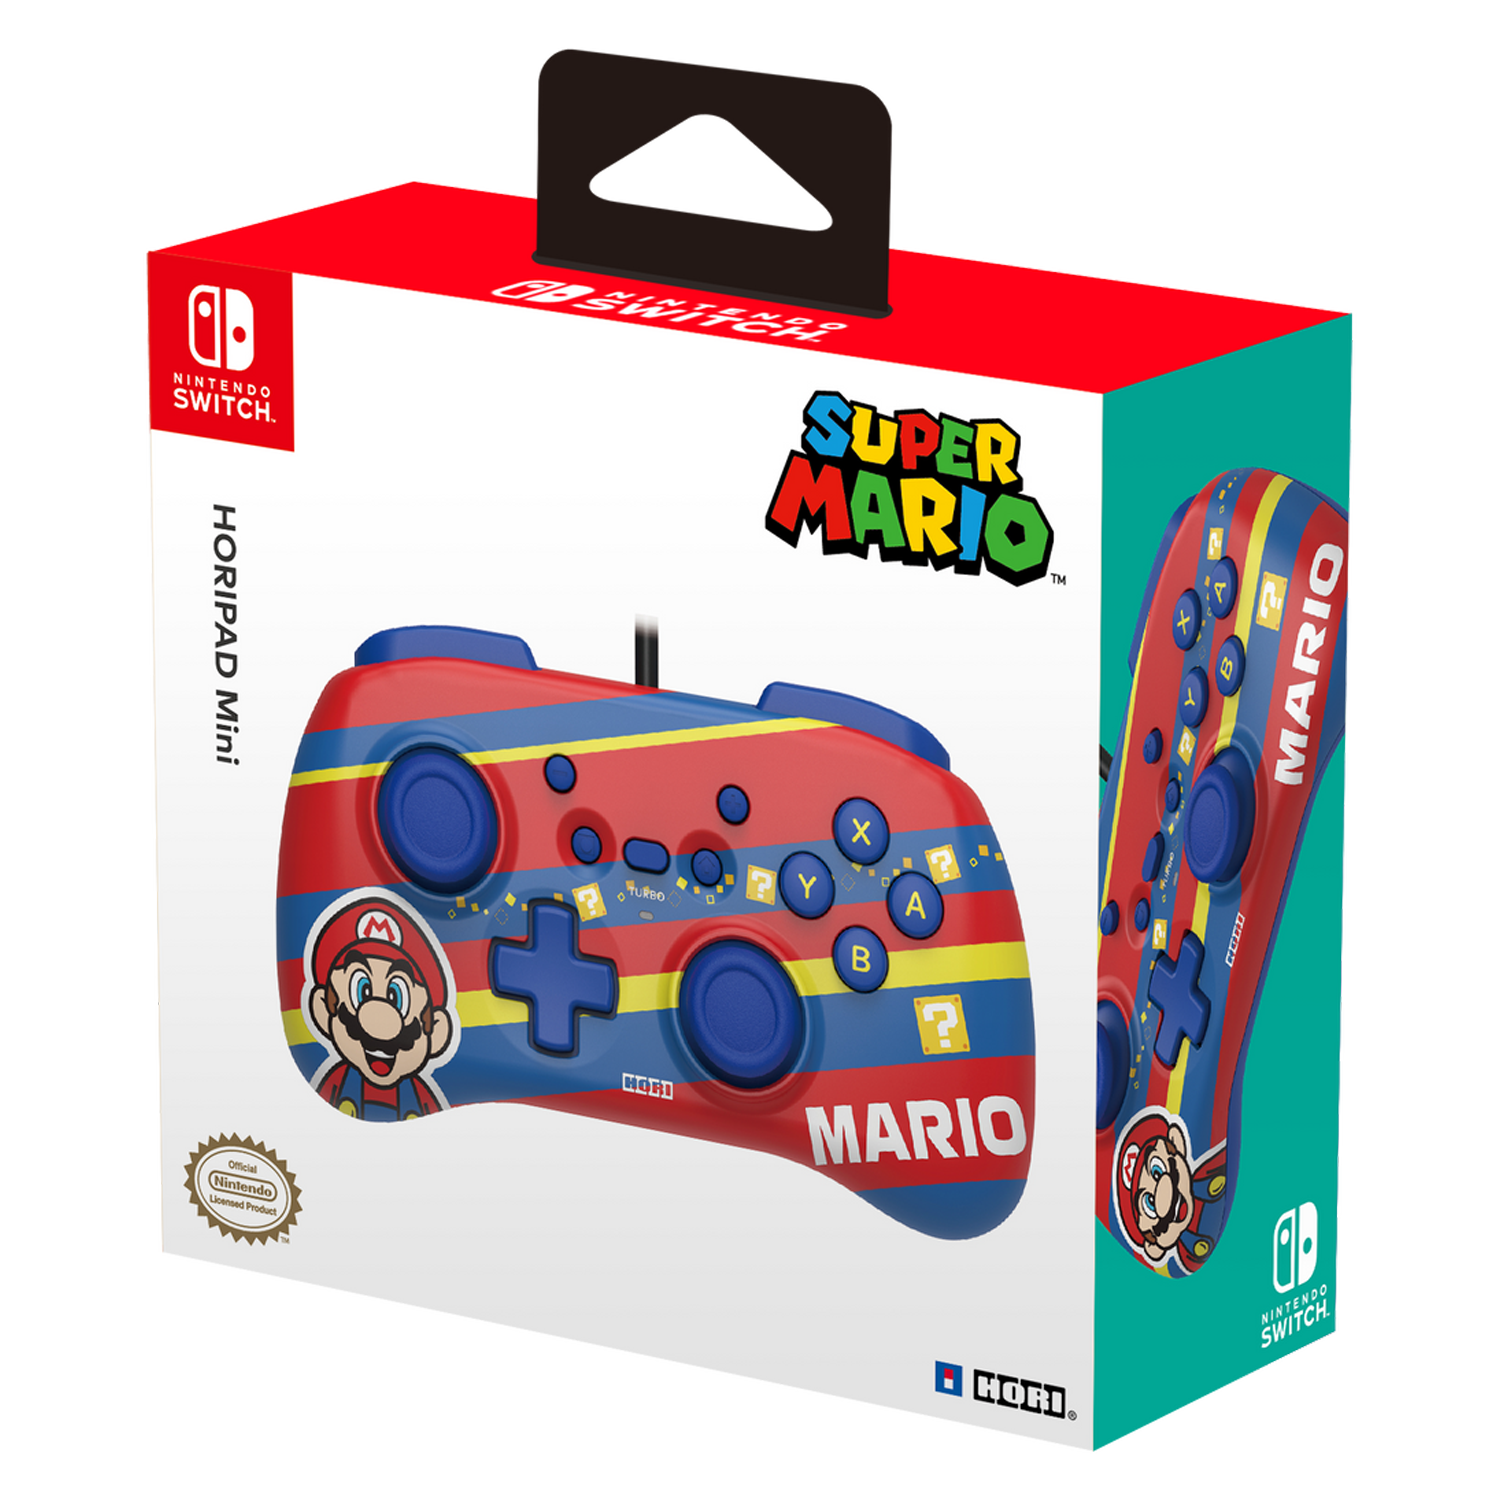 Controle Hori Horipad Mini Super Mario / com Fio para Nintendo Switch - Vermelho (NSW-366U)